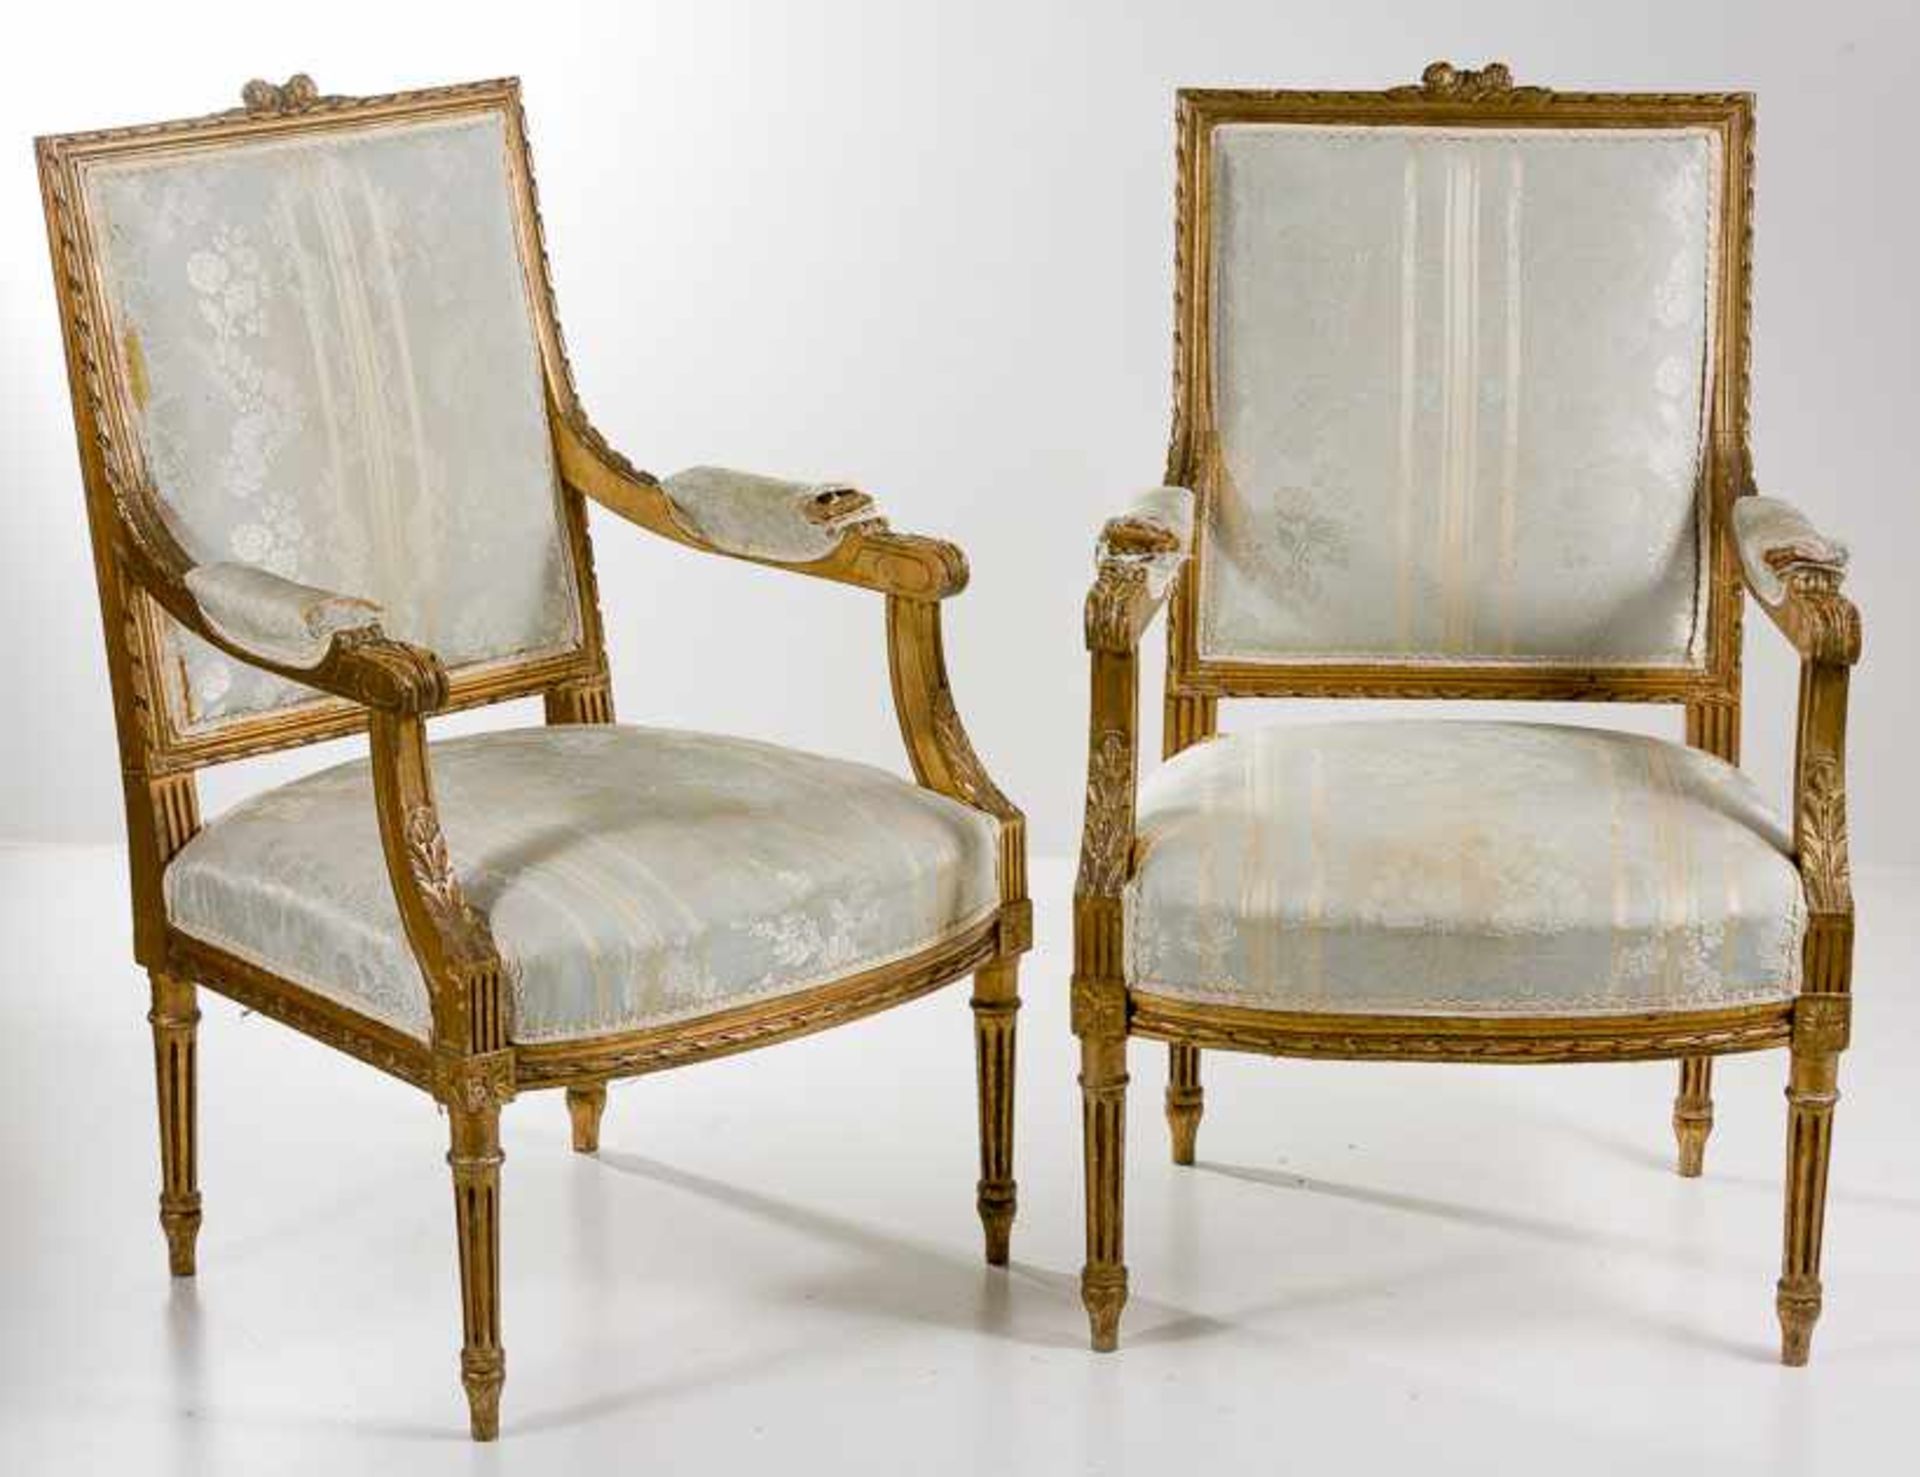 Zwei Armlehnstühle im Louis-XVI-Stil19. Jh.Holz, vergoldet. Hohe rechteckige Rückenlehne mit